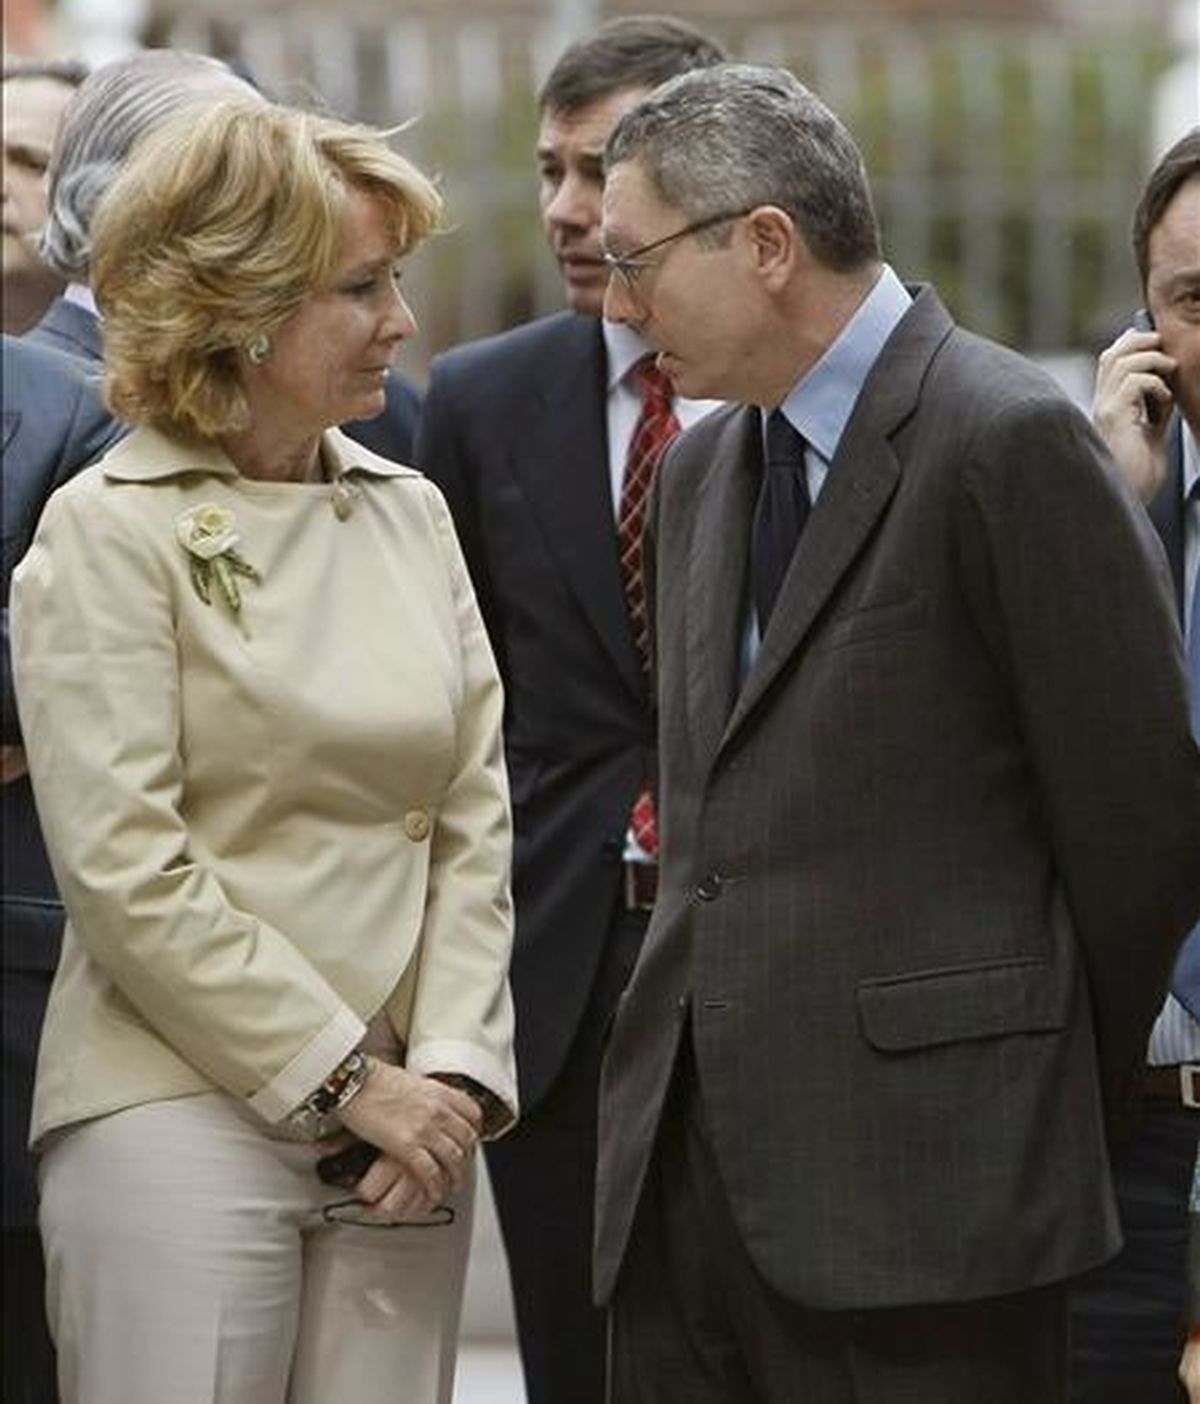 La presidenta de la Comunidad de Madrid, Esperanza Aguirre, conversa con el alcalde de Madrid, Alberto Ruiz-Gallardón, durante un acto institucional. EFE/Archivo